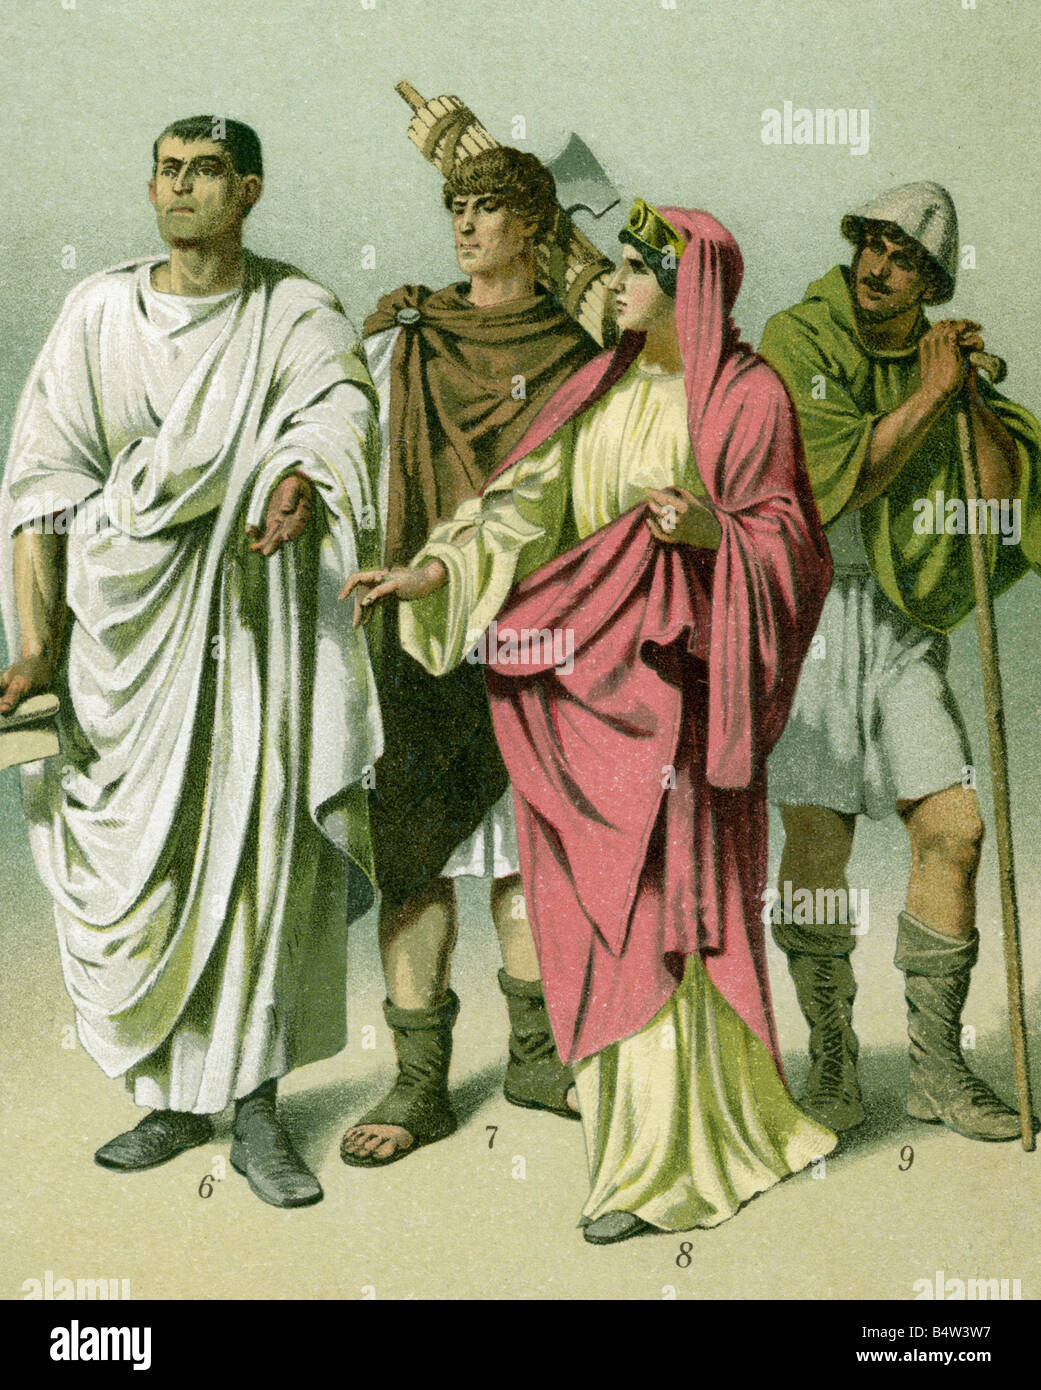 Antica toga romana immagini e fotografie stock ad alta risoluzione - Alamy